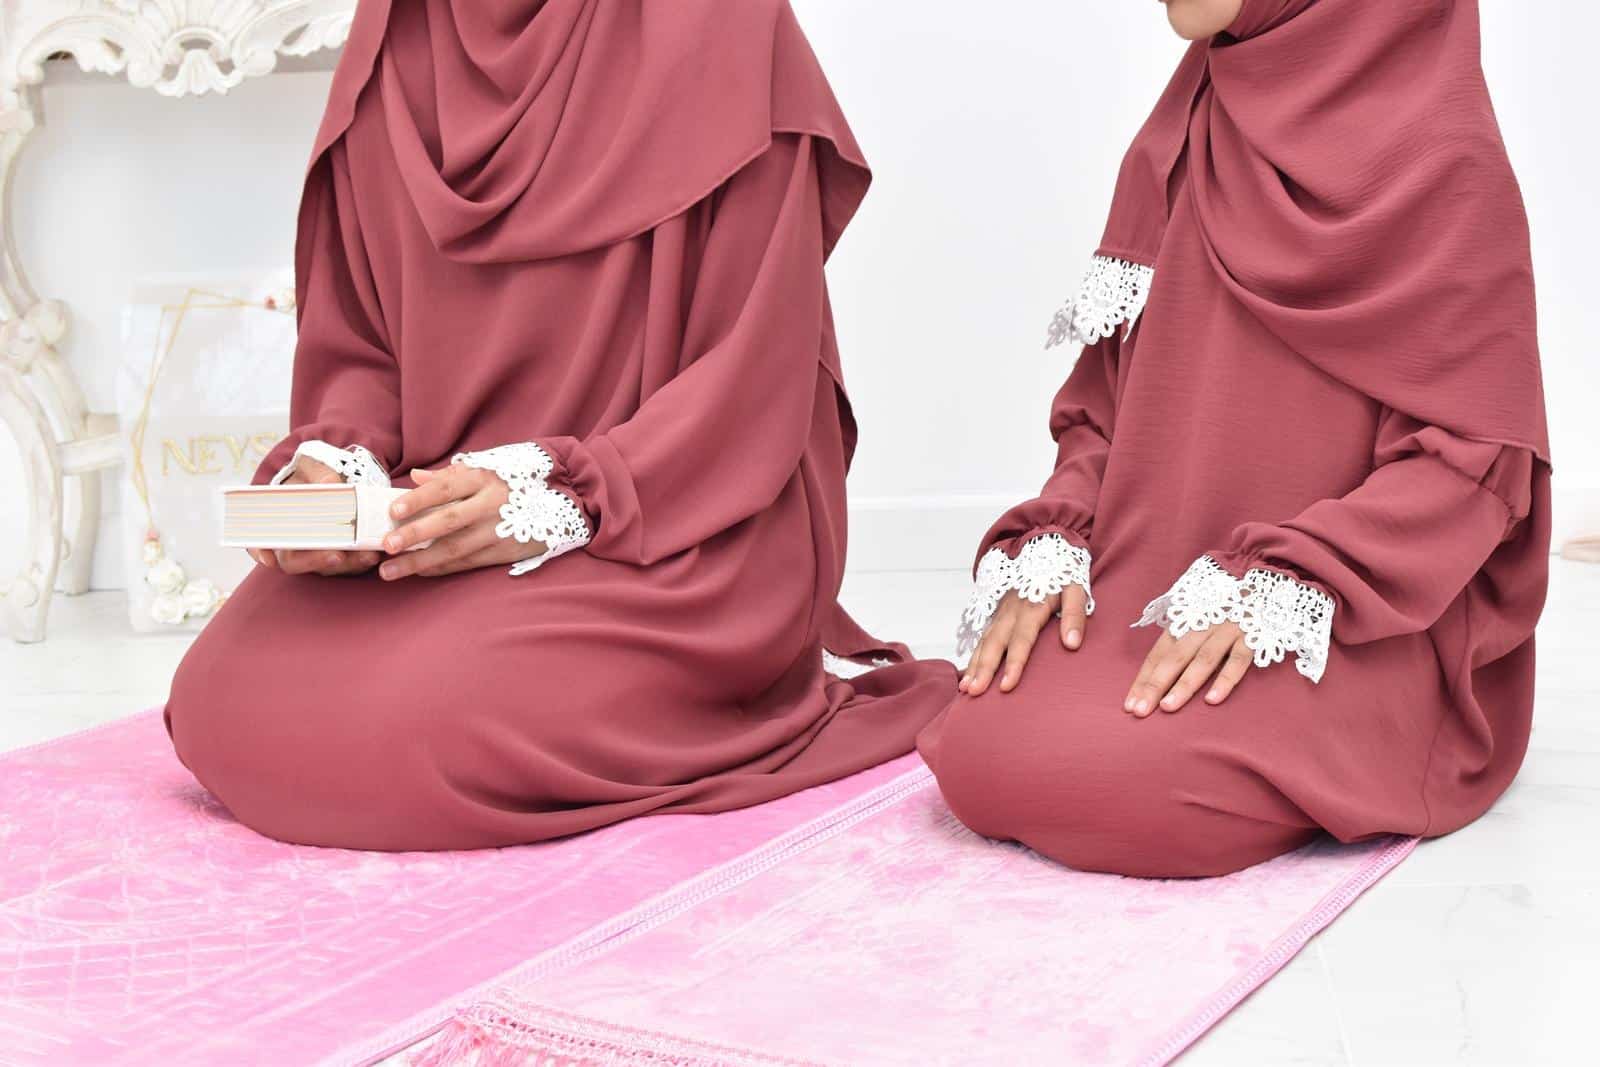 A saisir: Robe de prière de qualité par Neyssa Shop. Un superbe cadeau à offrir